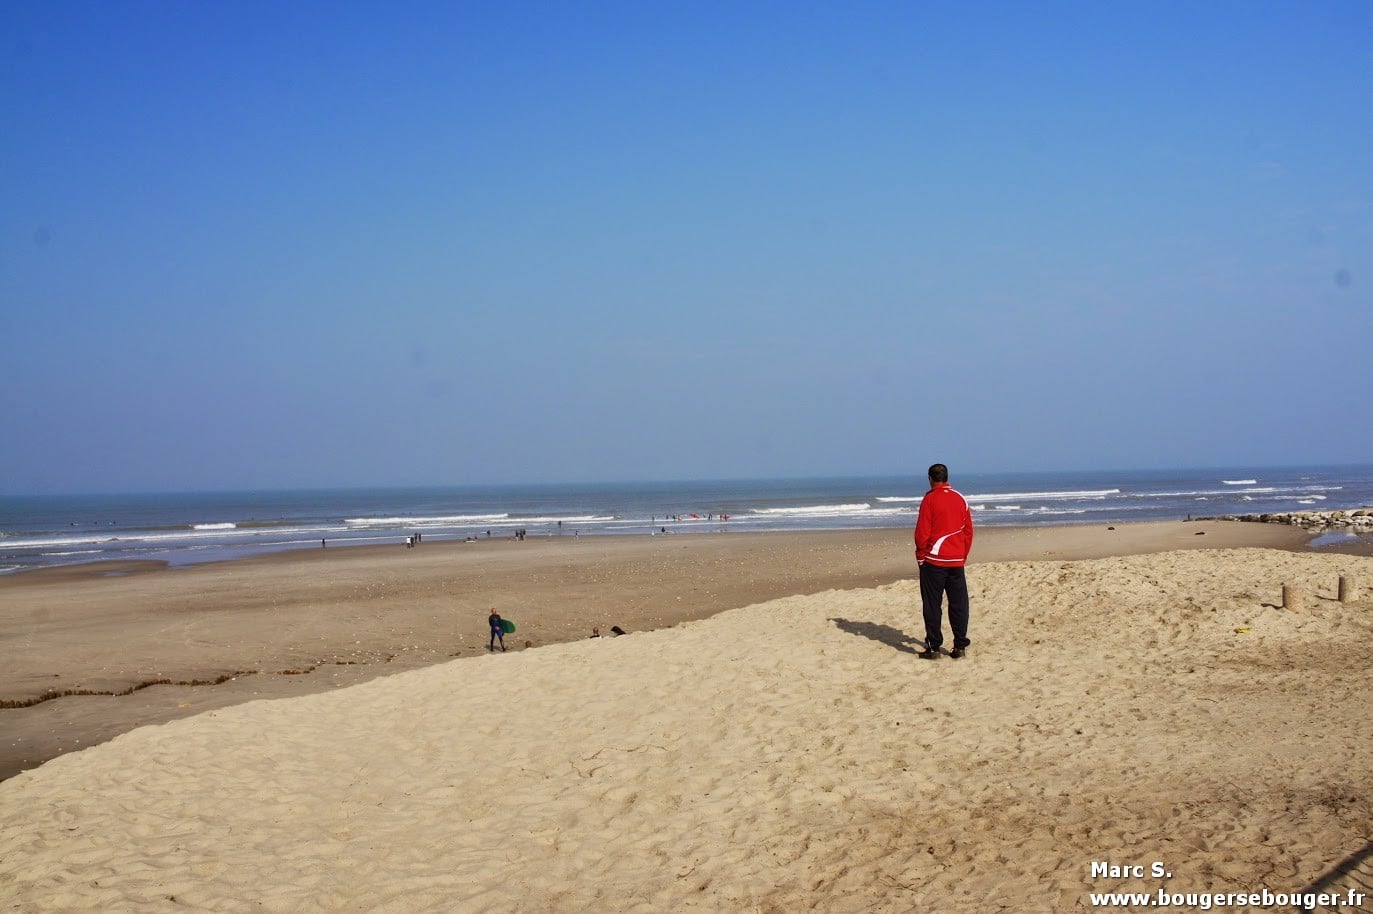 Lors d'une rando vélo entre Charentes, Saintonge et Médoc, vue de la plage de Soulac-su-Mer en avril 2014. On ne se rend pas compte que quelques semaines avant, une tempête a ravagé la dune et la jetée.